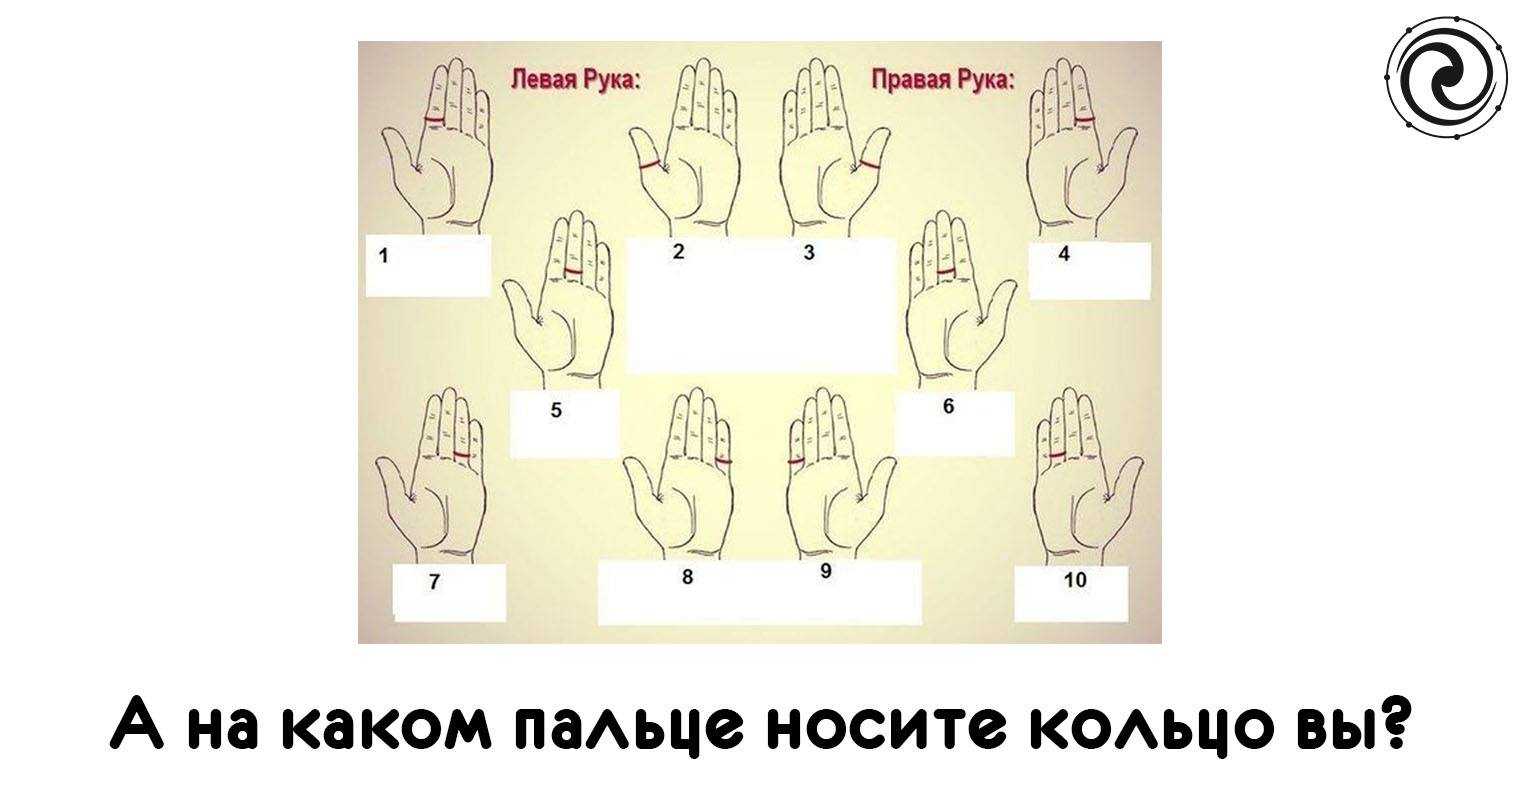 Значение колец на пальцах у женщин и мужчин